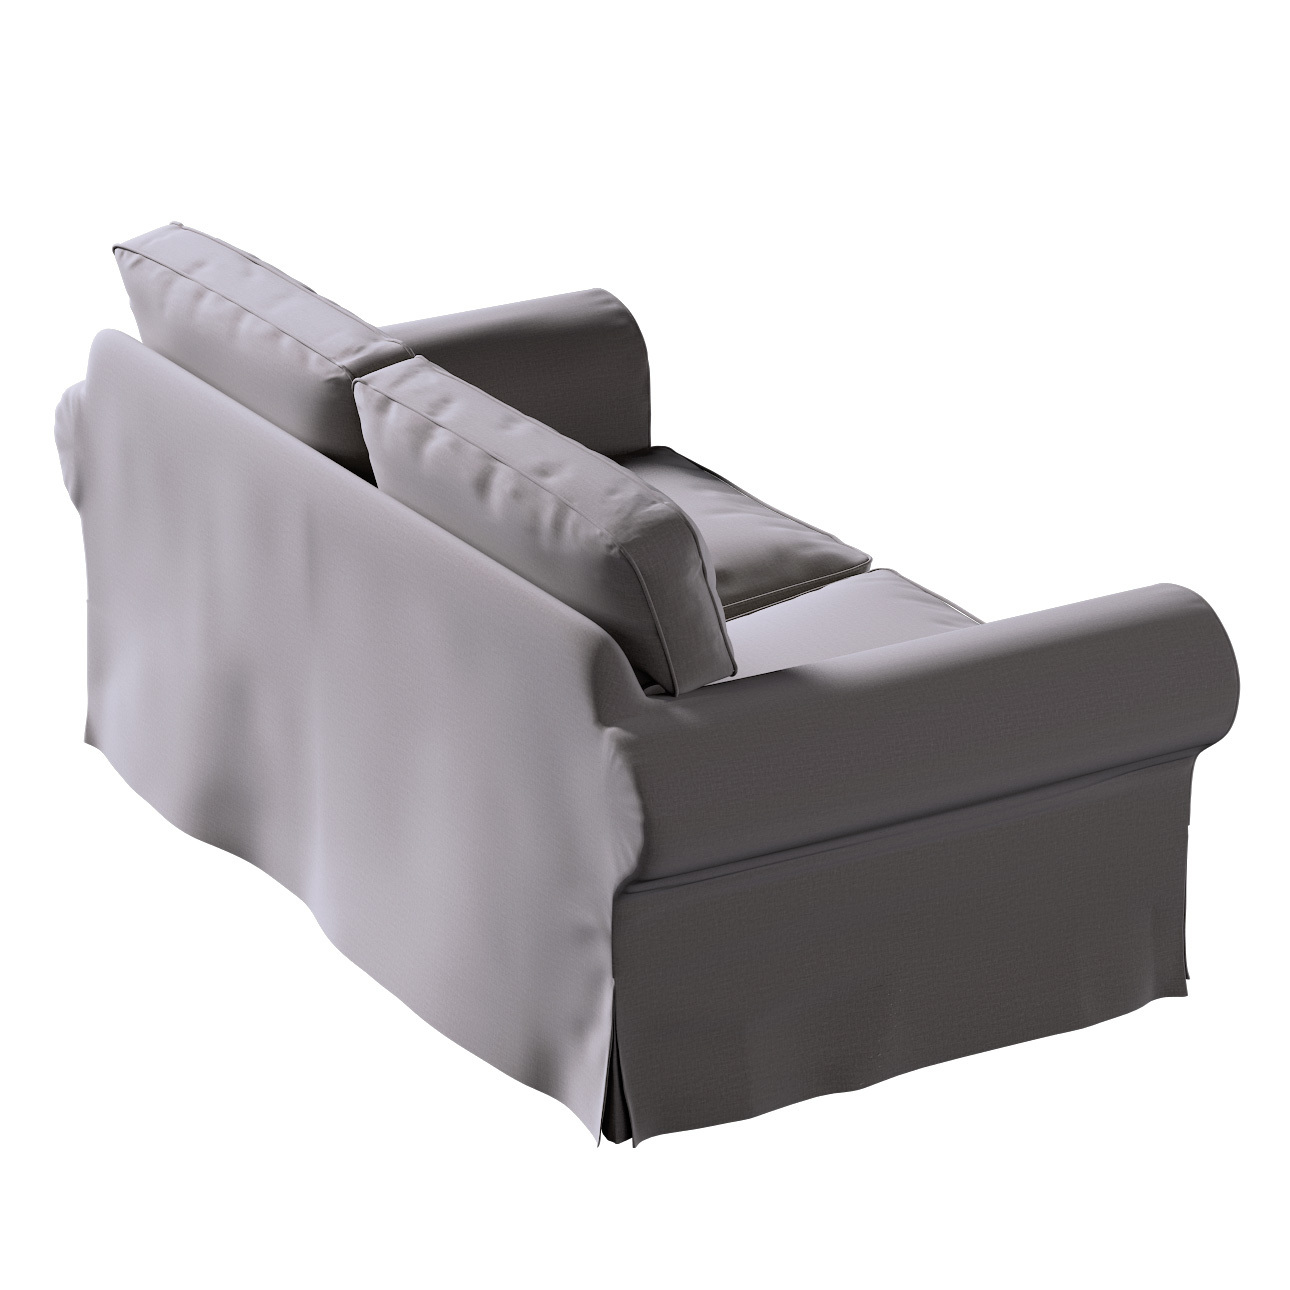 Bezug für Ektorp 2-Sitzer Sofa nicht ausklappbar, braun, Sofabezug für  Ekt günstig online kaufen